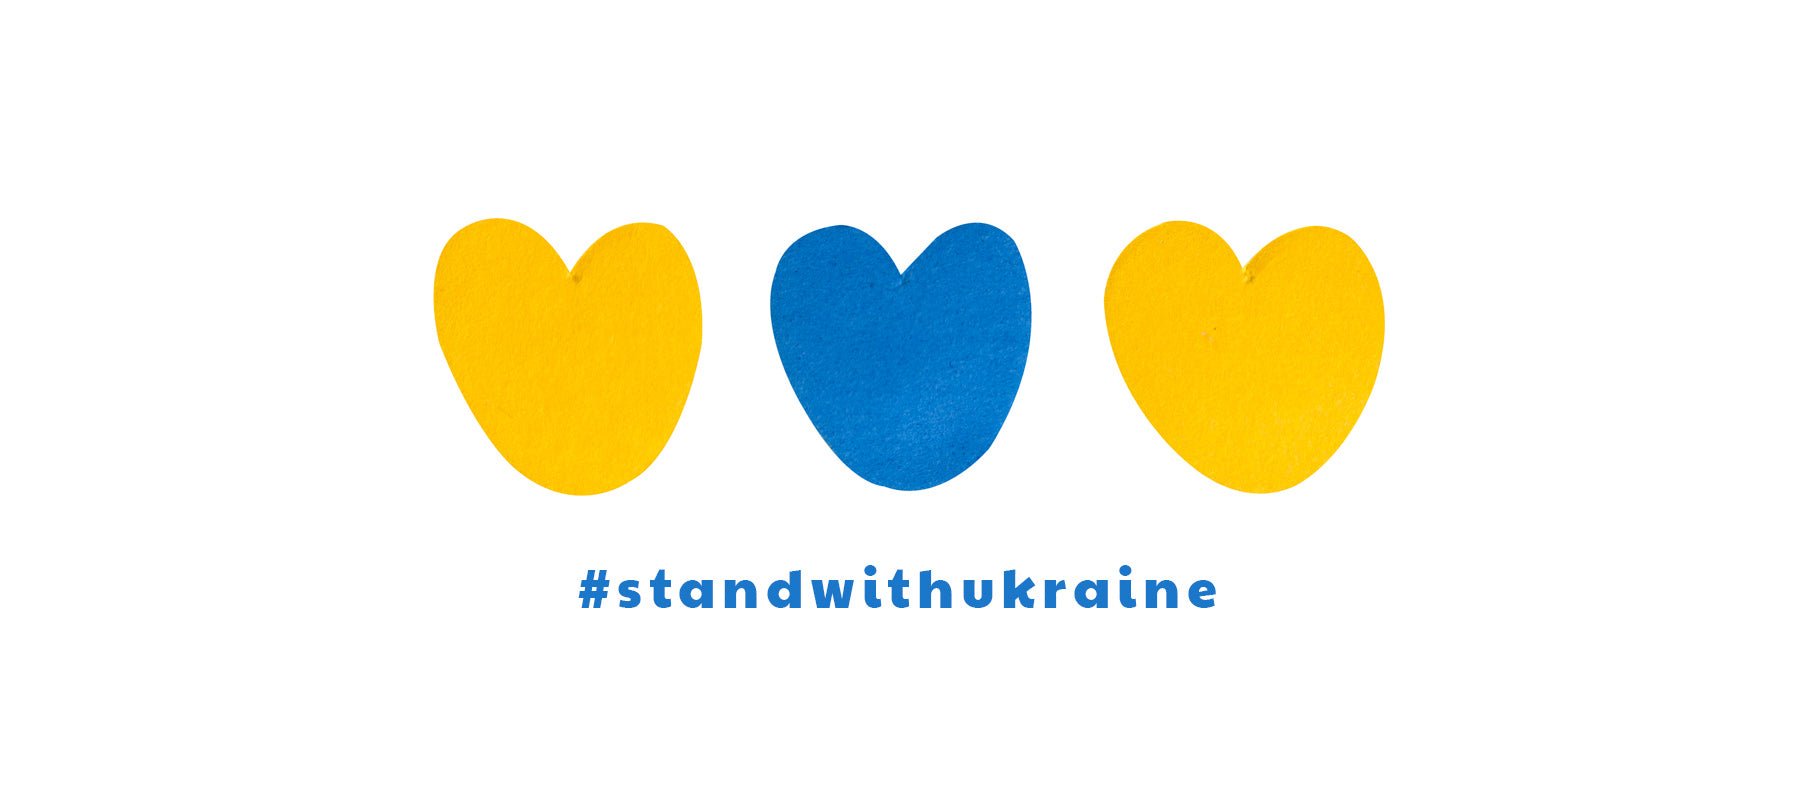 Des Petits Hauts se mobilise en faveur de l’Ukraine - Des Petits Hauts